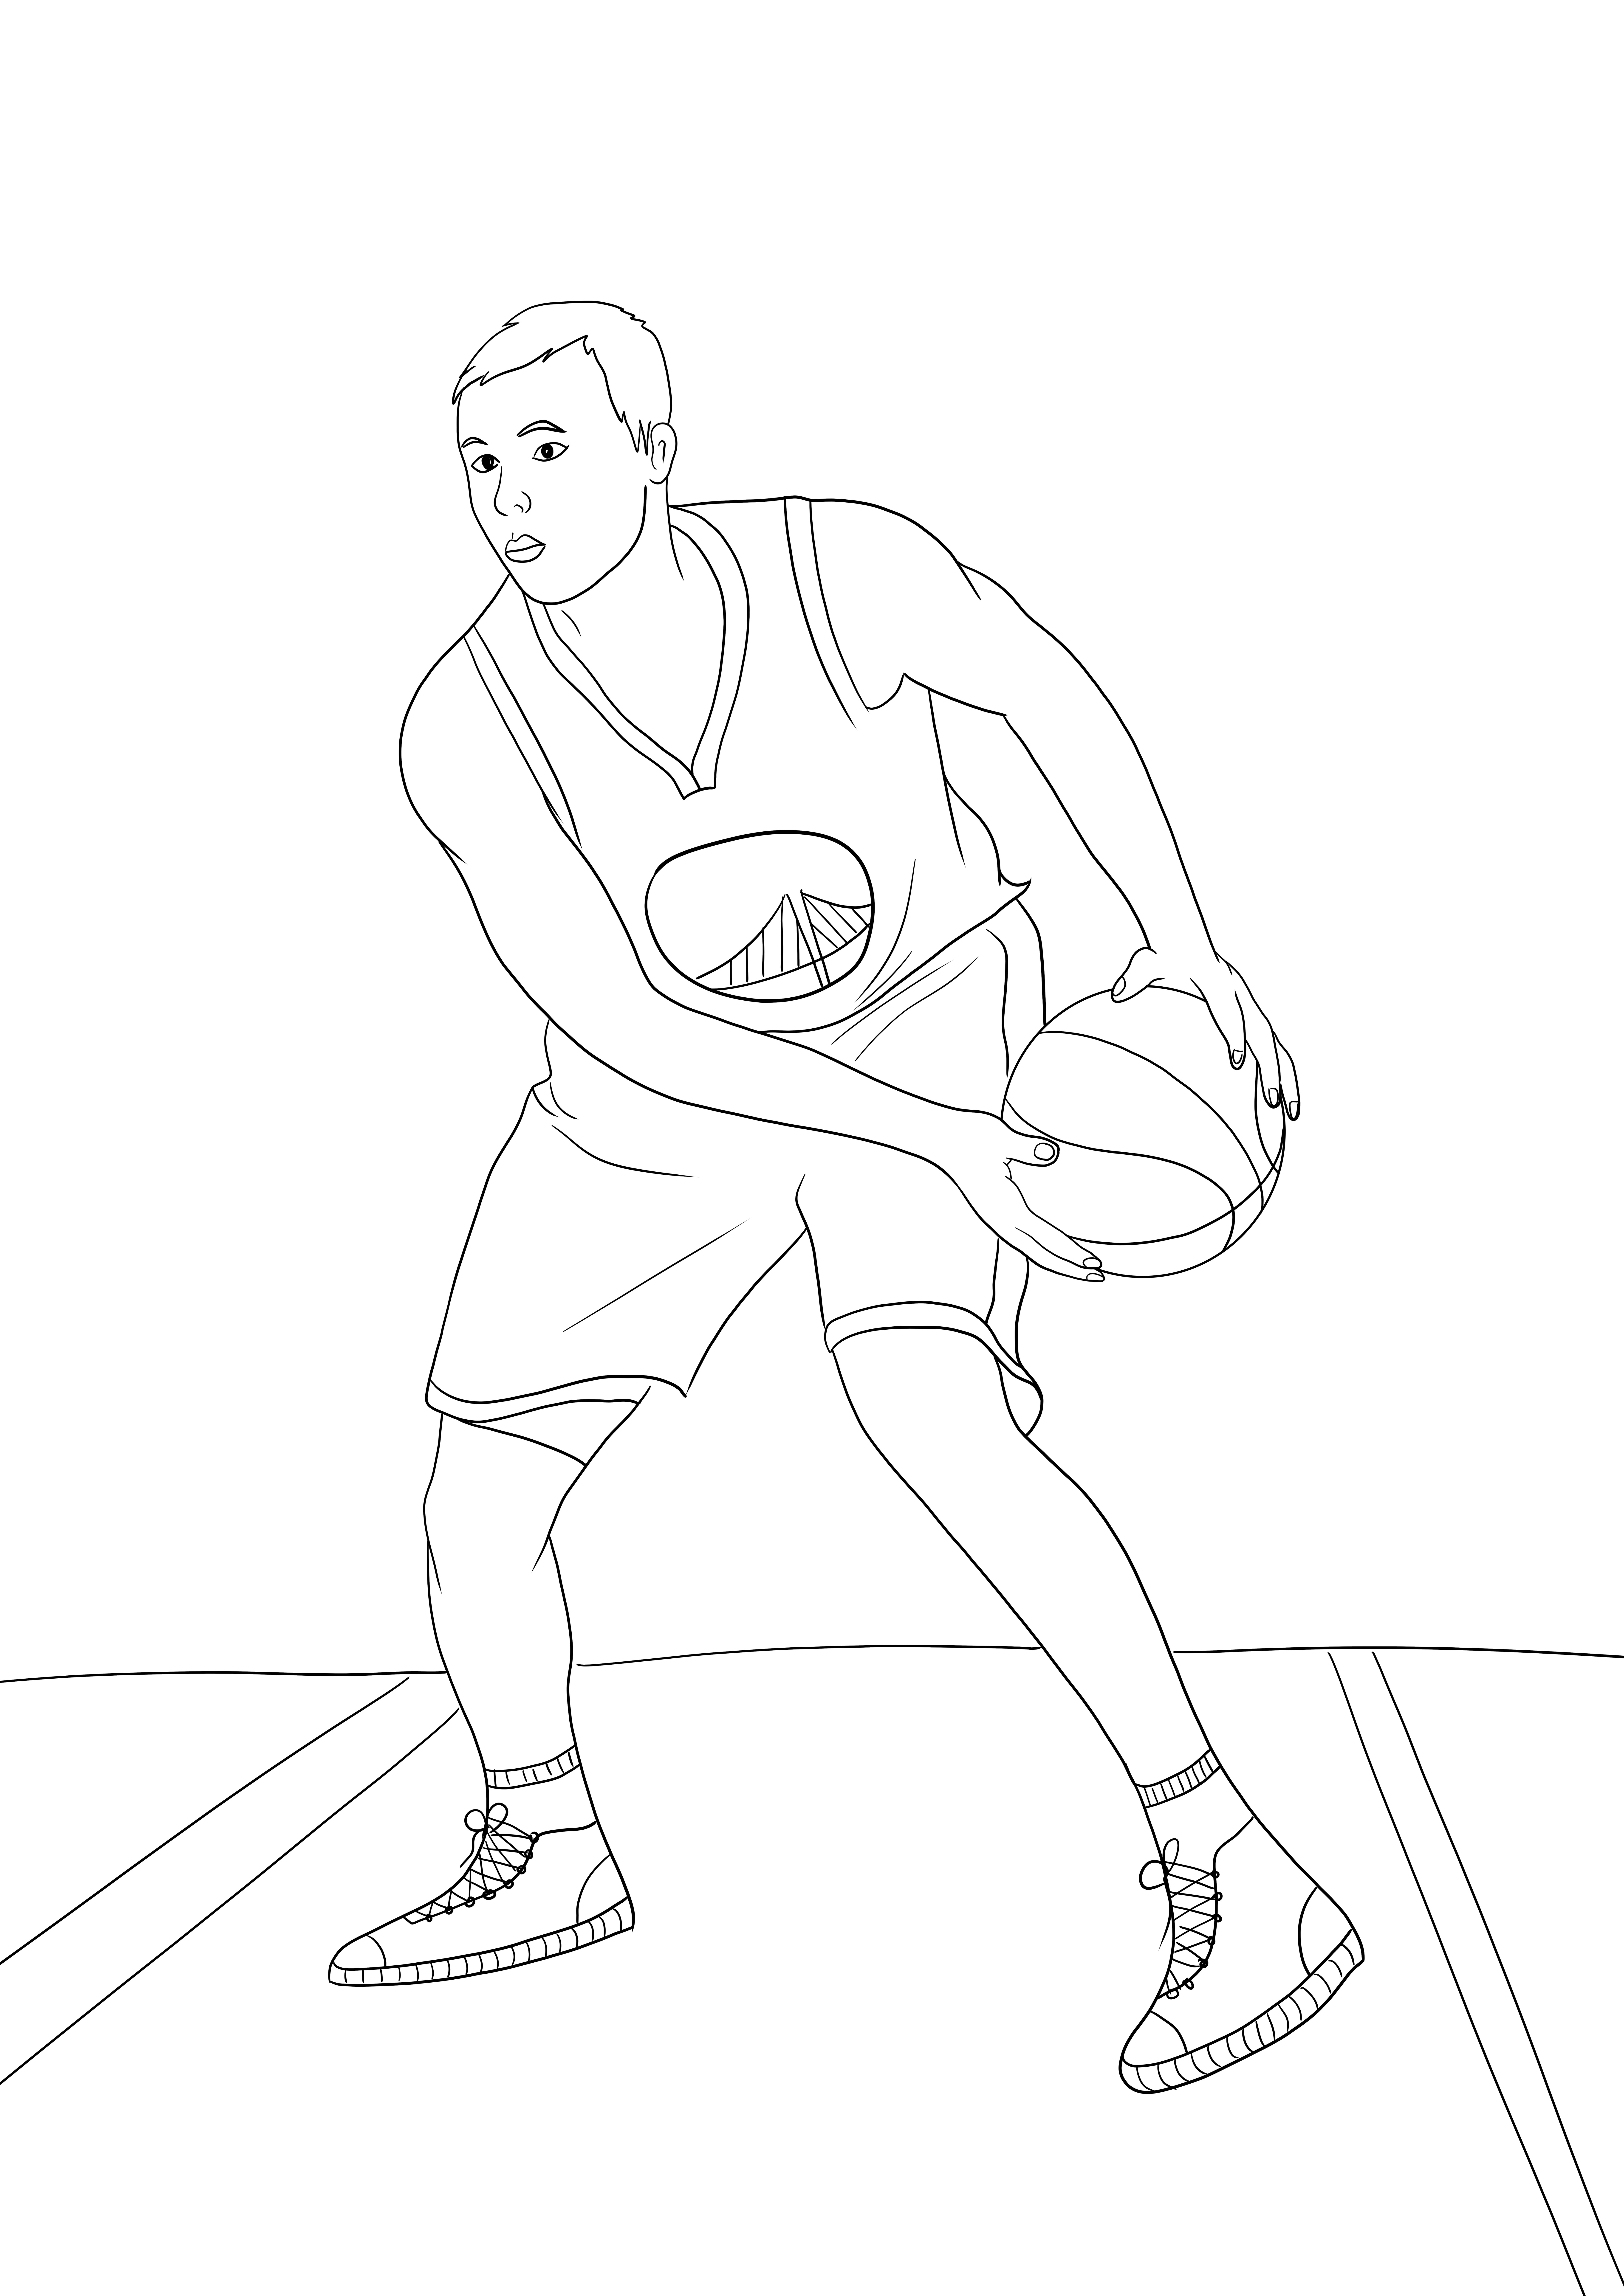 Stephen Curry dall'NBA semplice da colorare e scaricare gratuitamente l'immagine